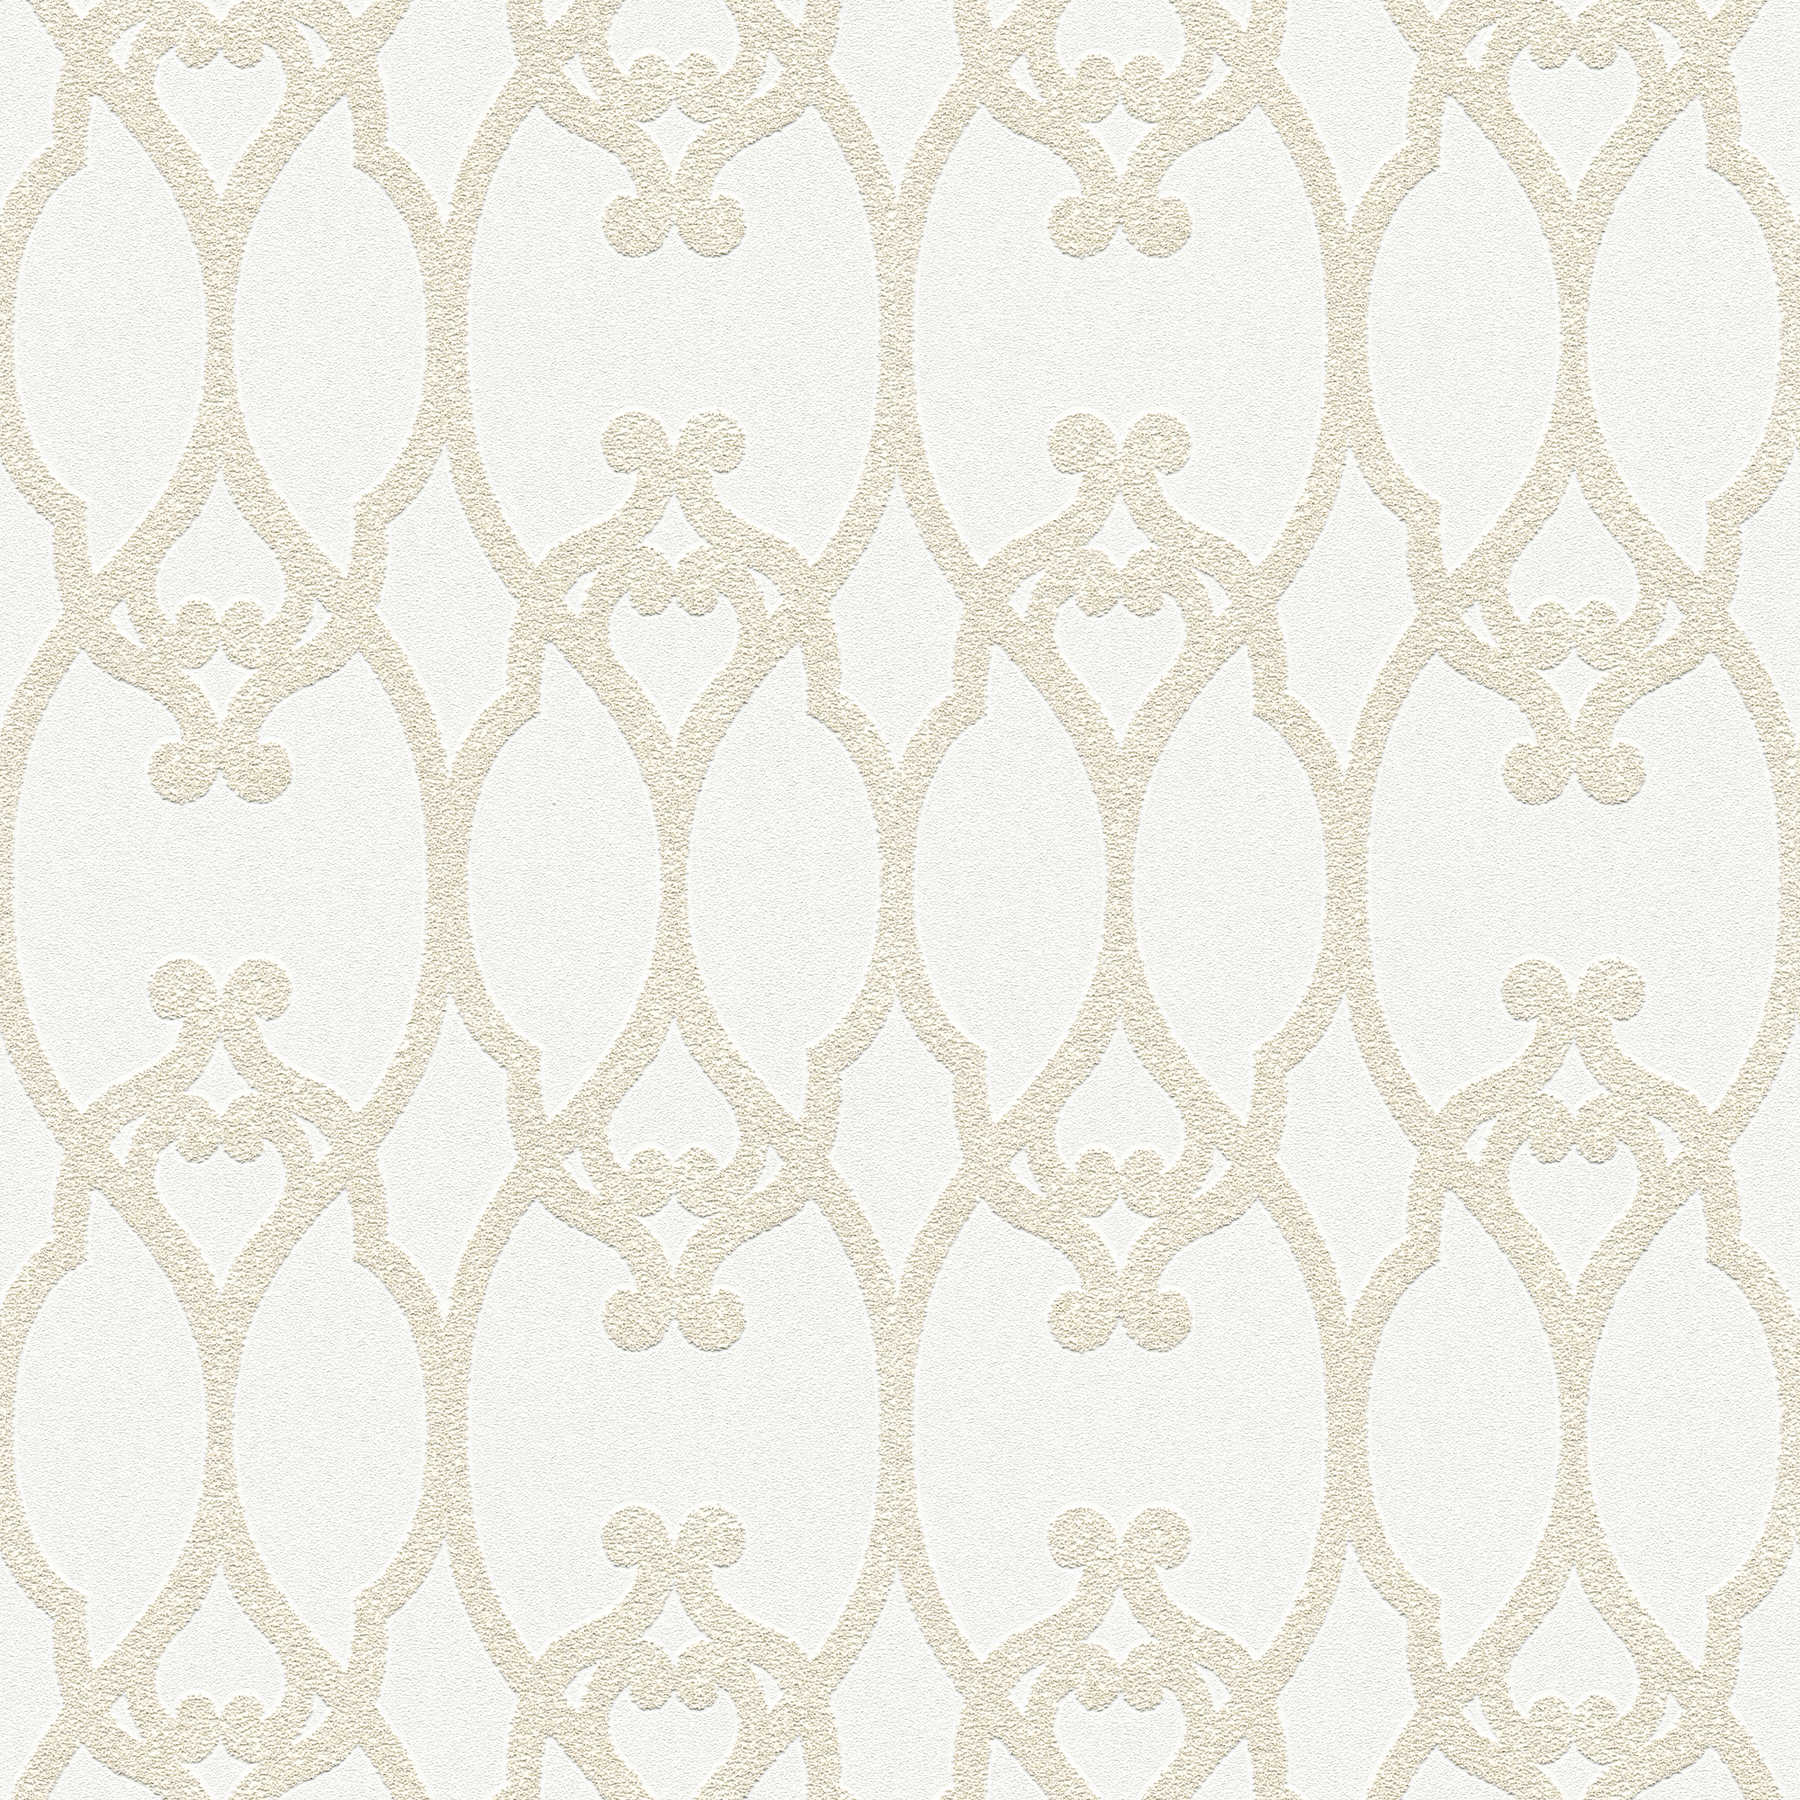 Ornament Tapete mit Barock Muster überstreichbar – Weiß
